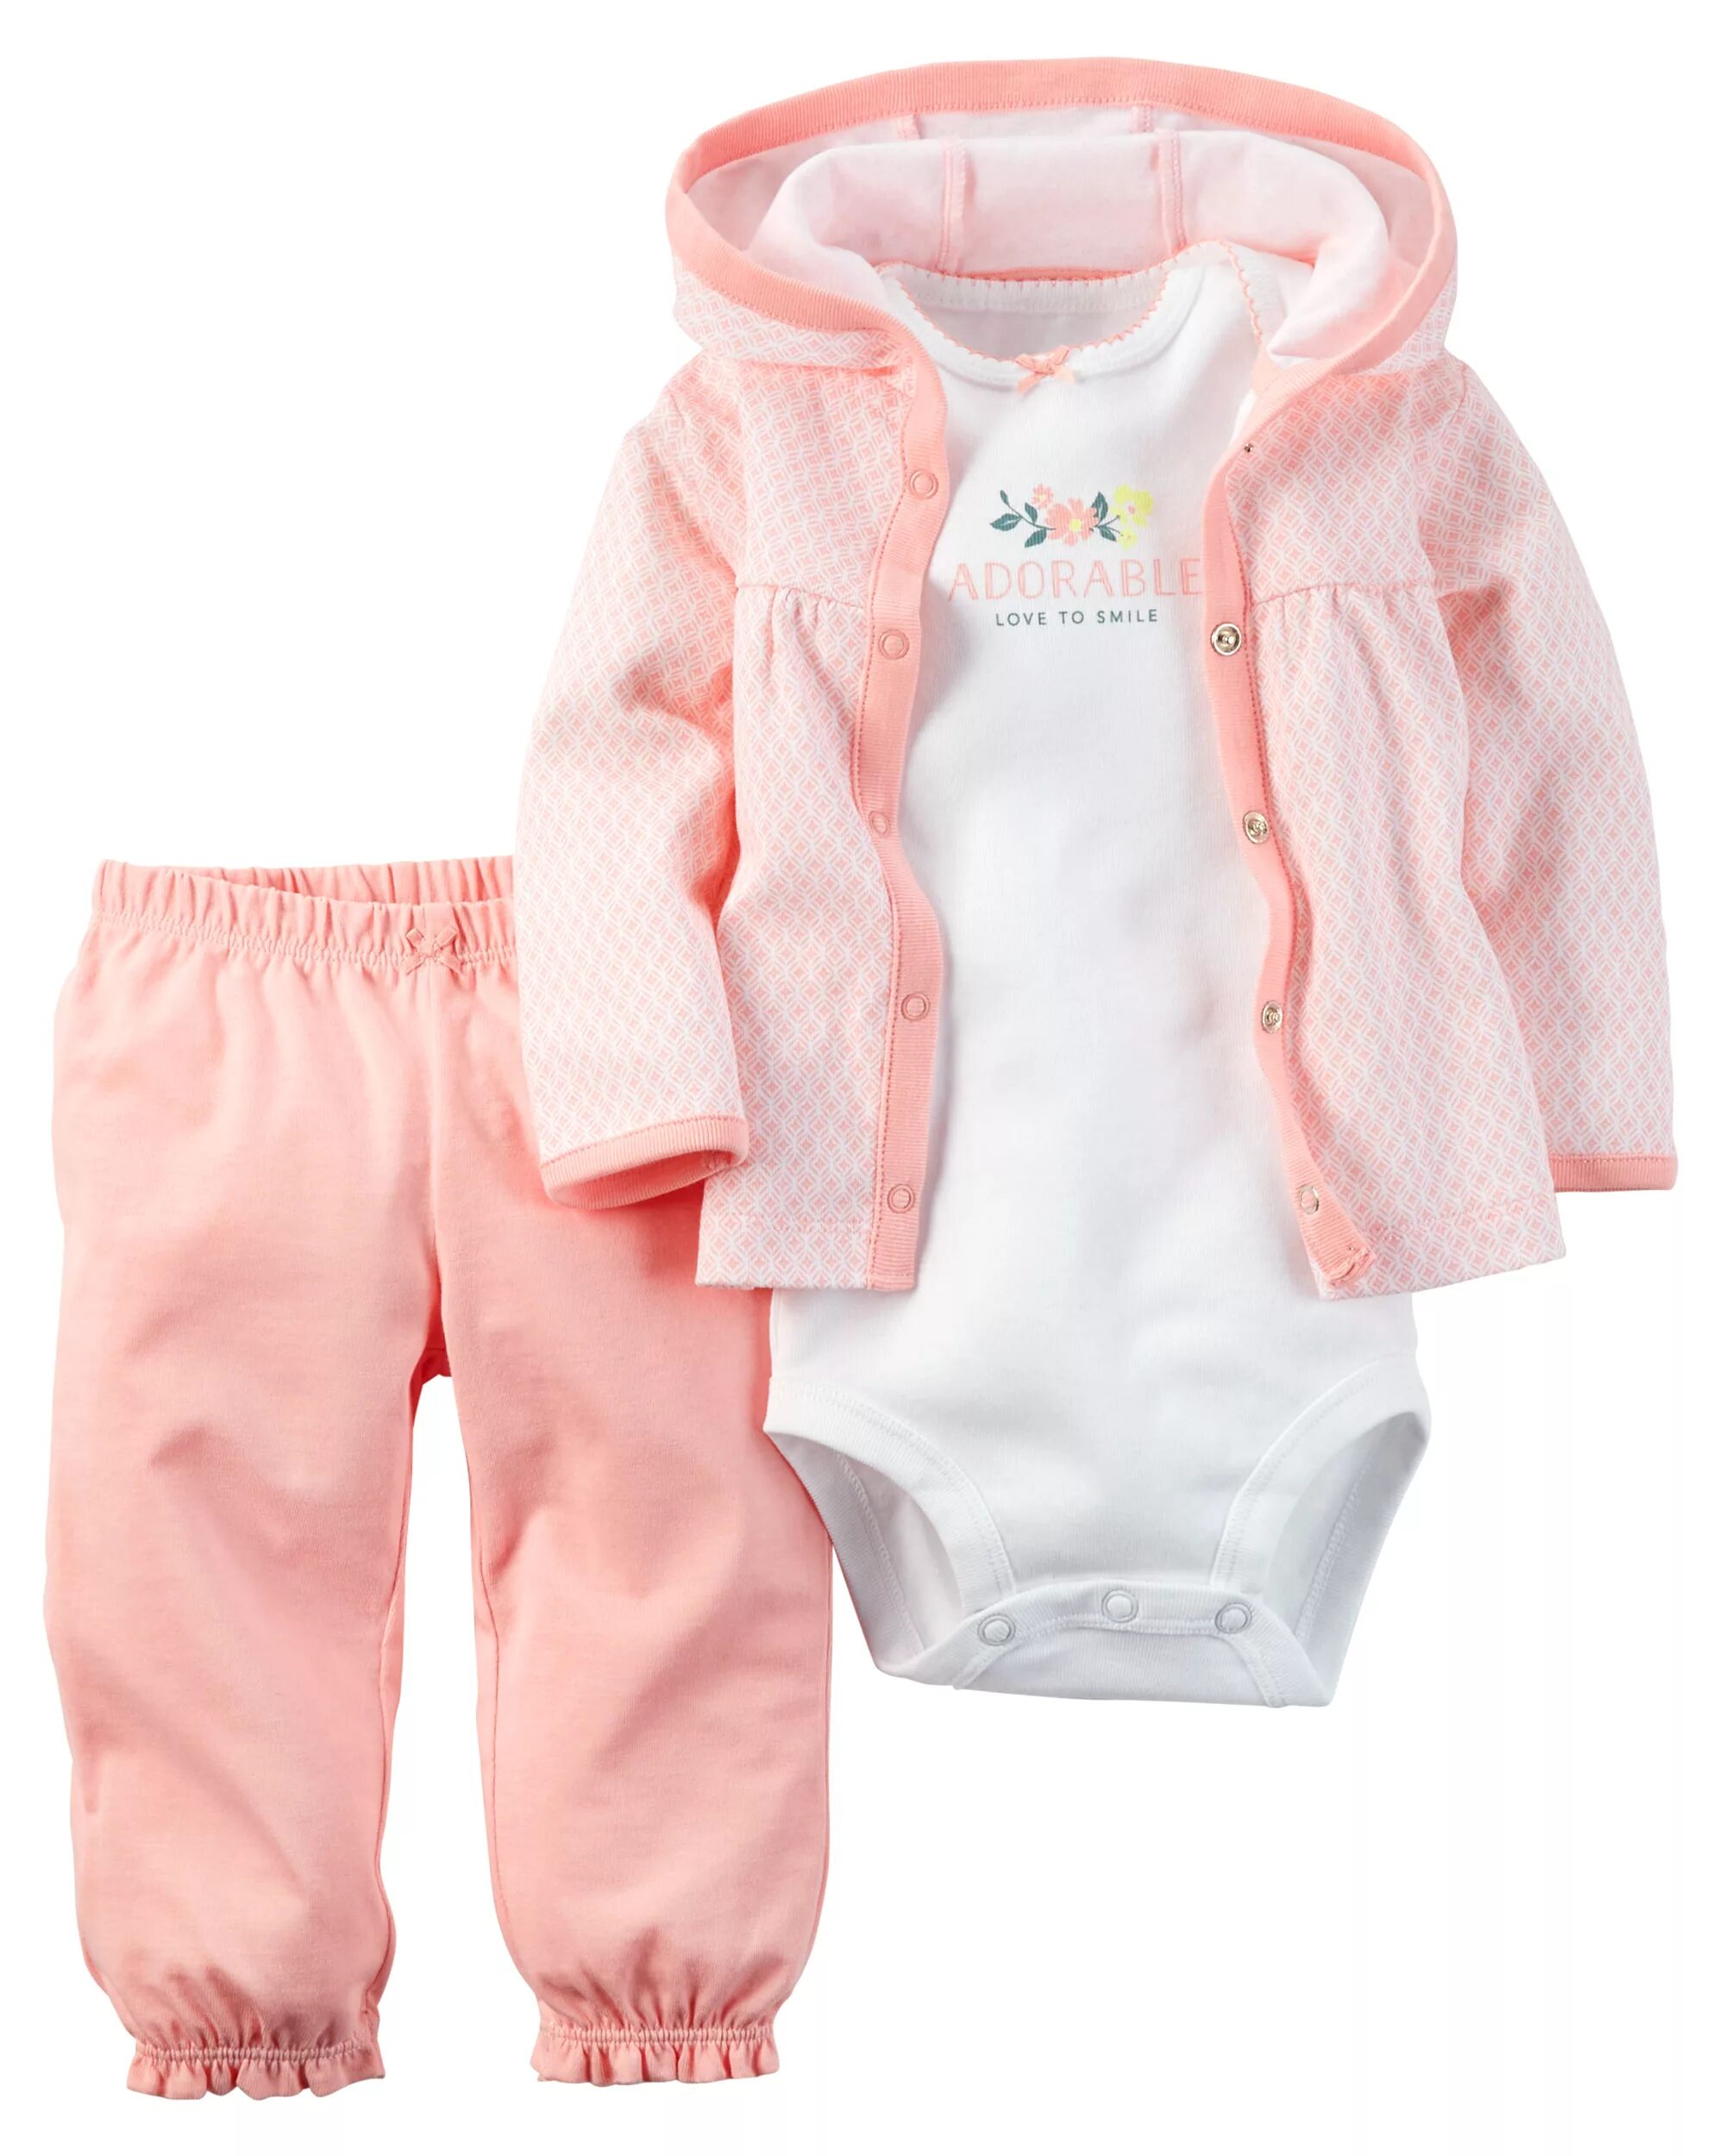 Костюм Carters 1h359510. Одежда для новорожденного. Вещи для новорожденных. Одежда для новорожденных девочек. Ребенку 6 месяцев одежда